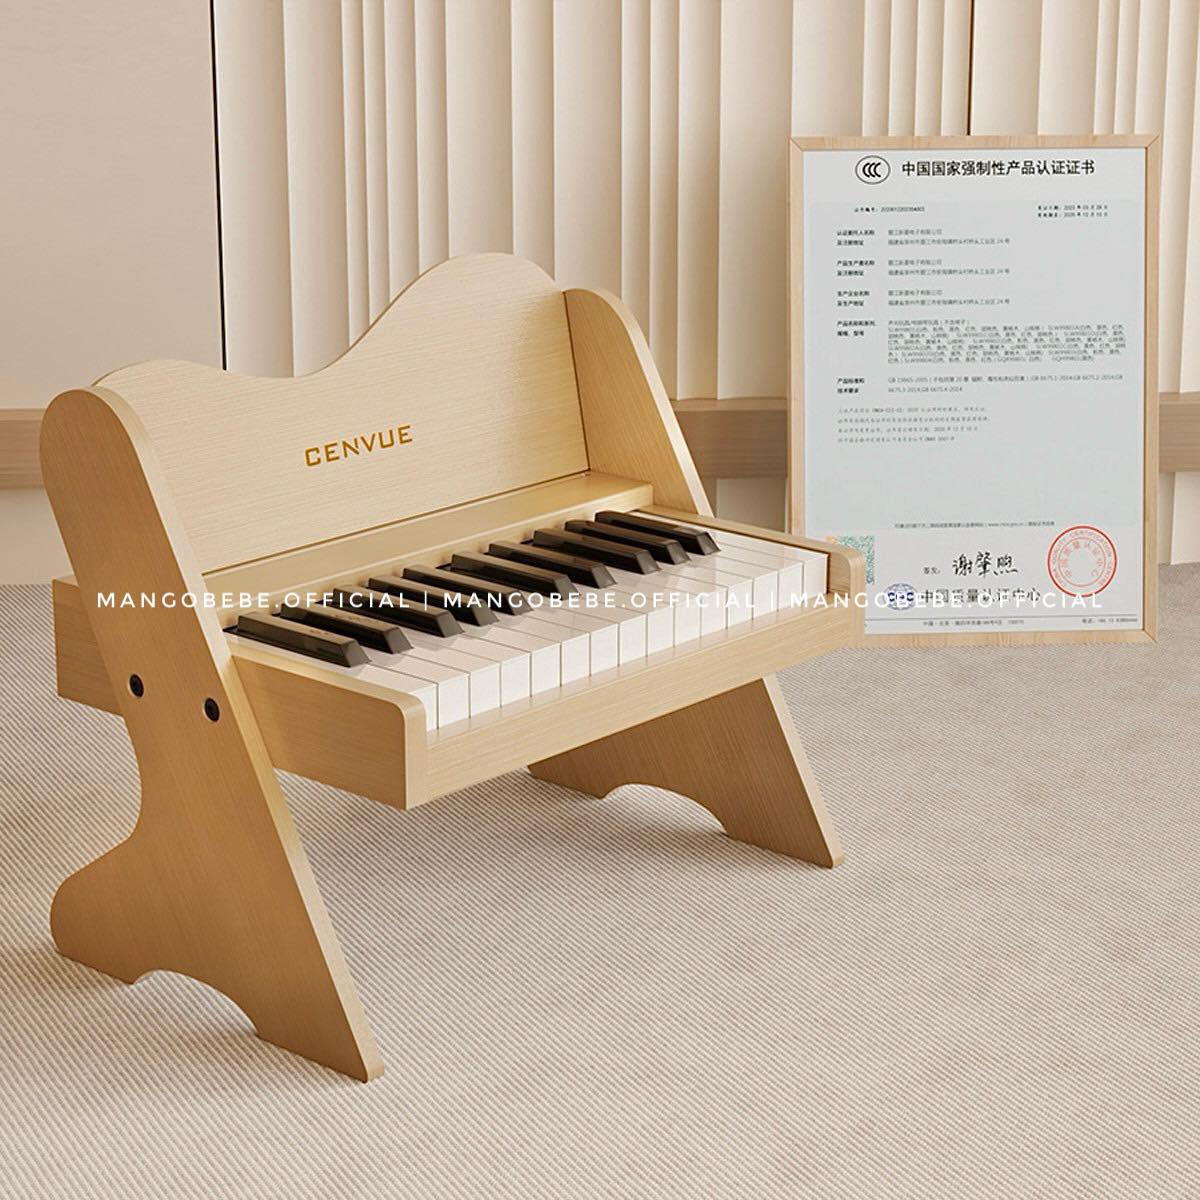 Đàn piano gỗ điện tử Cenvue